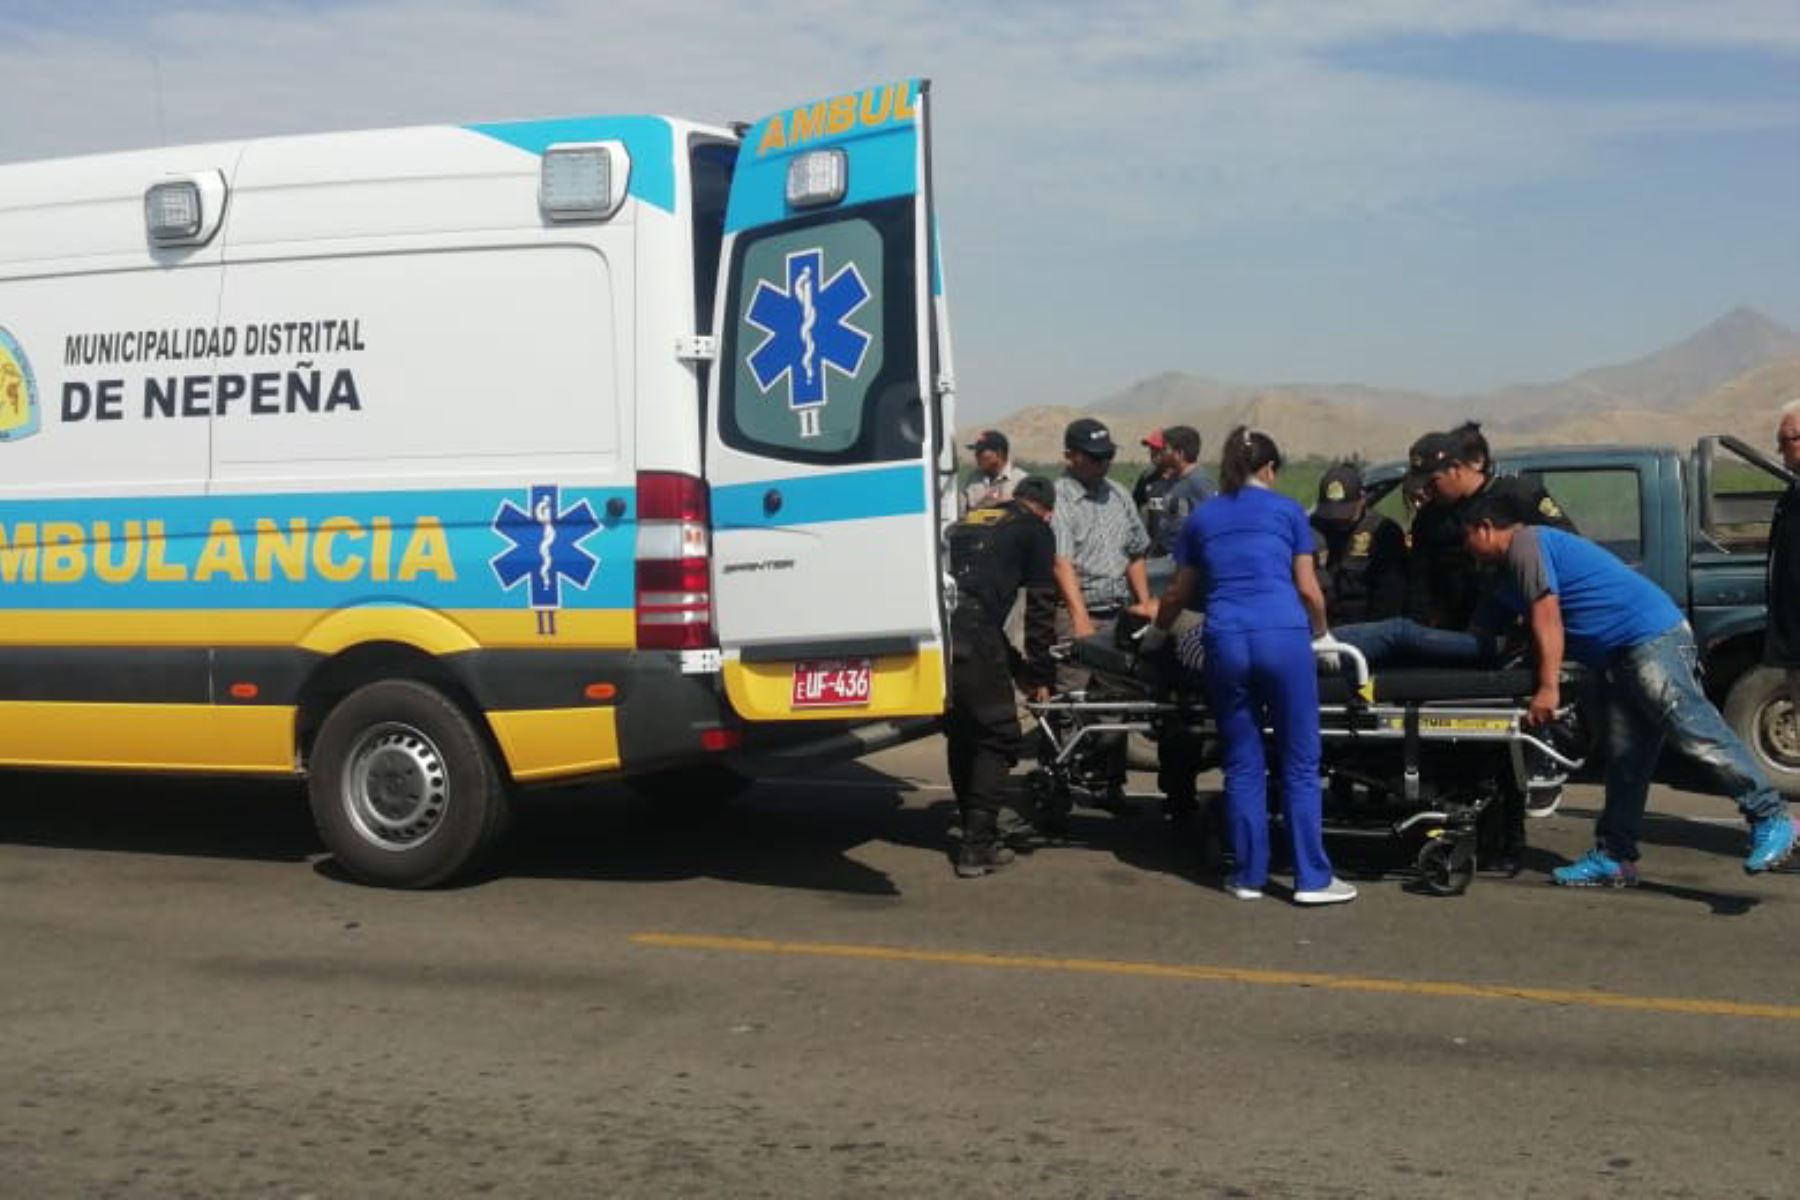 Vehículo de municipalidad distrital de Nepeña, en Áncash, se despista y deja 4 trabajadores heridos.